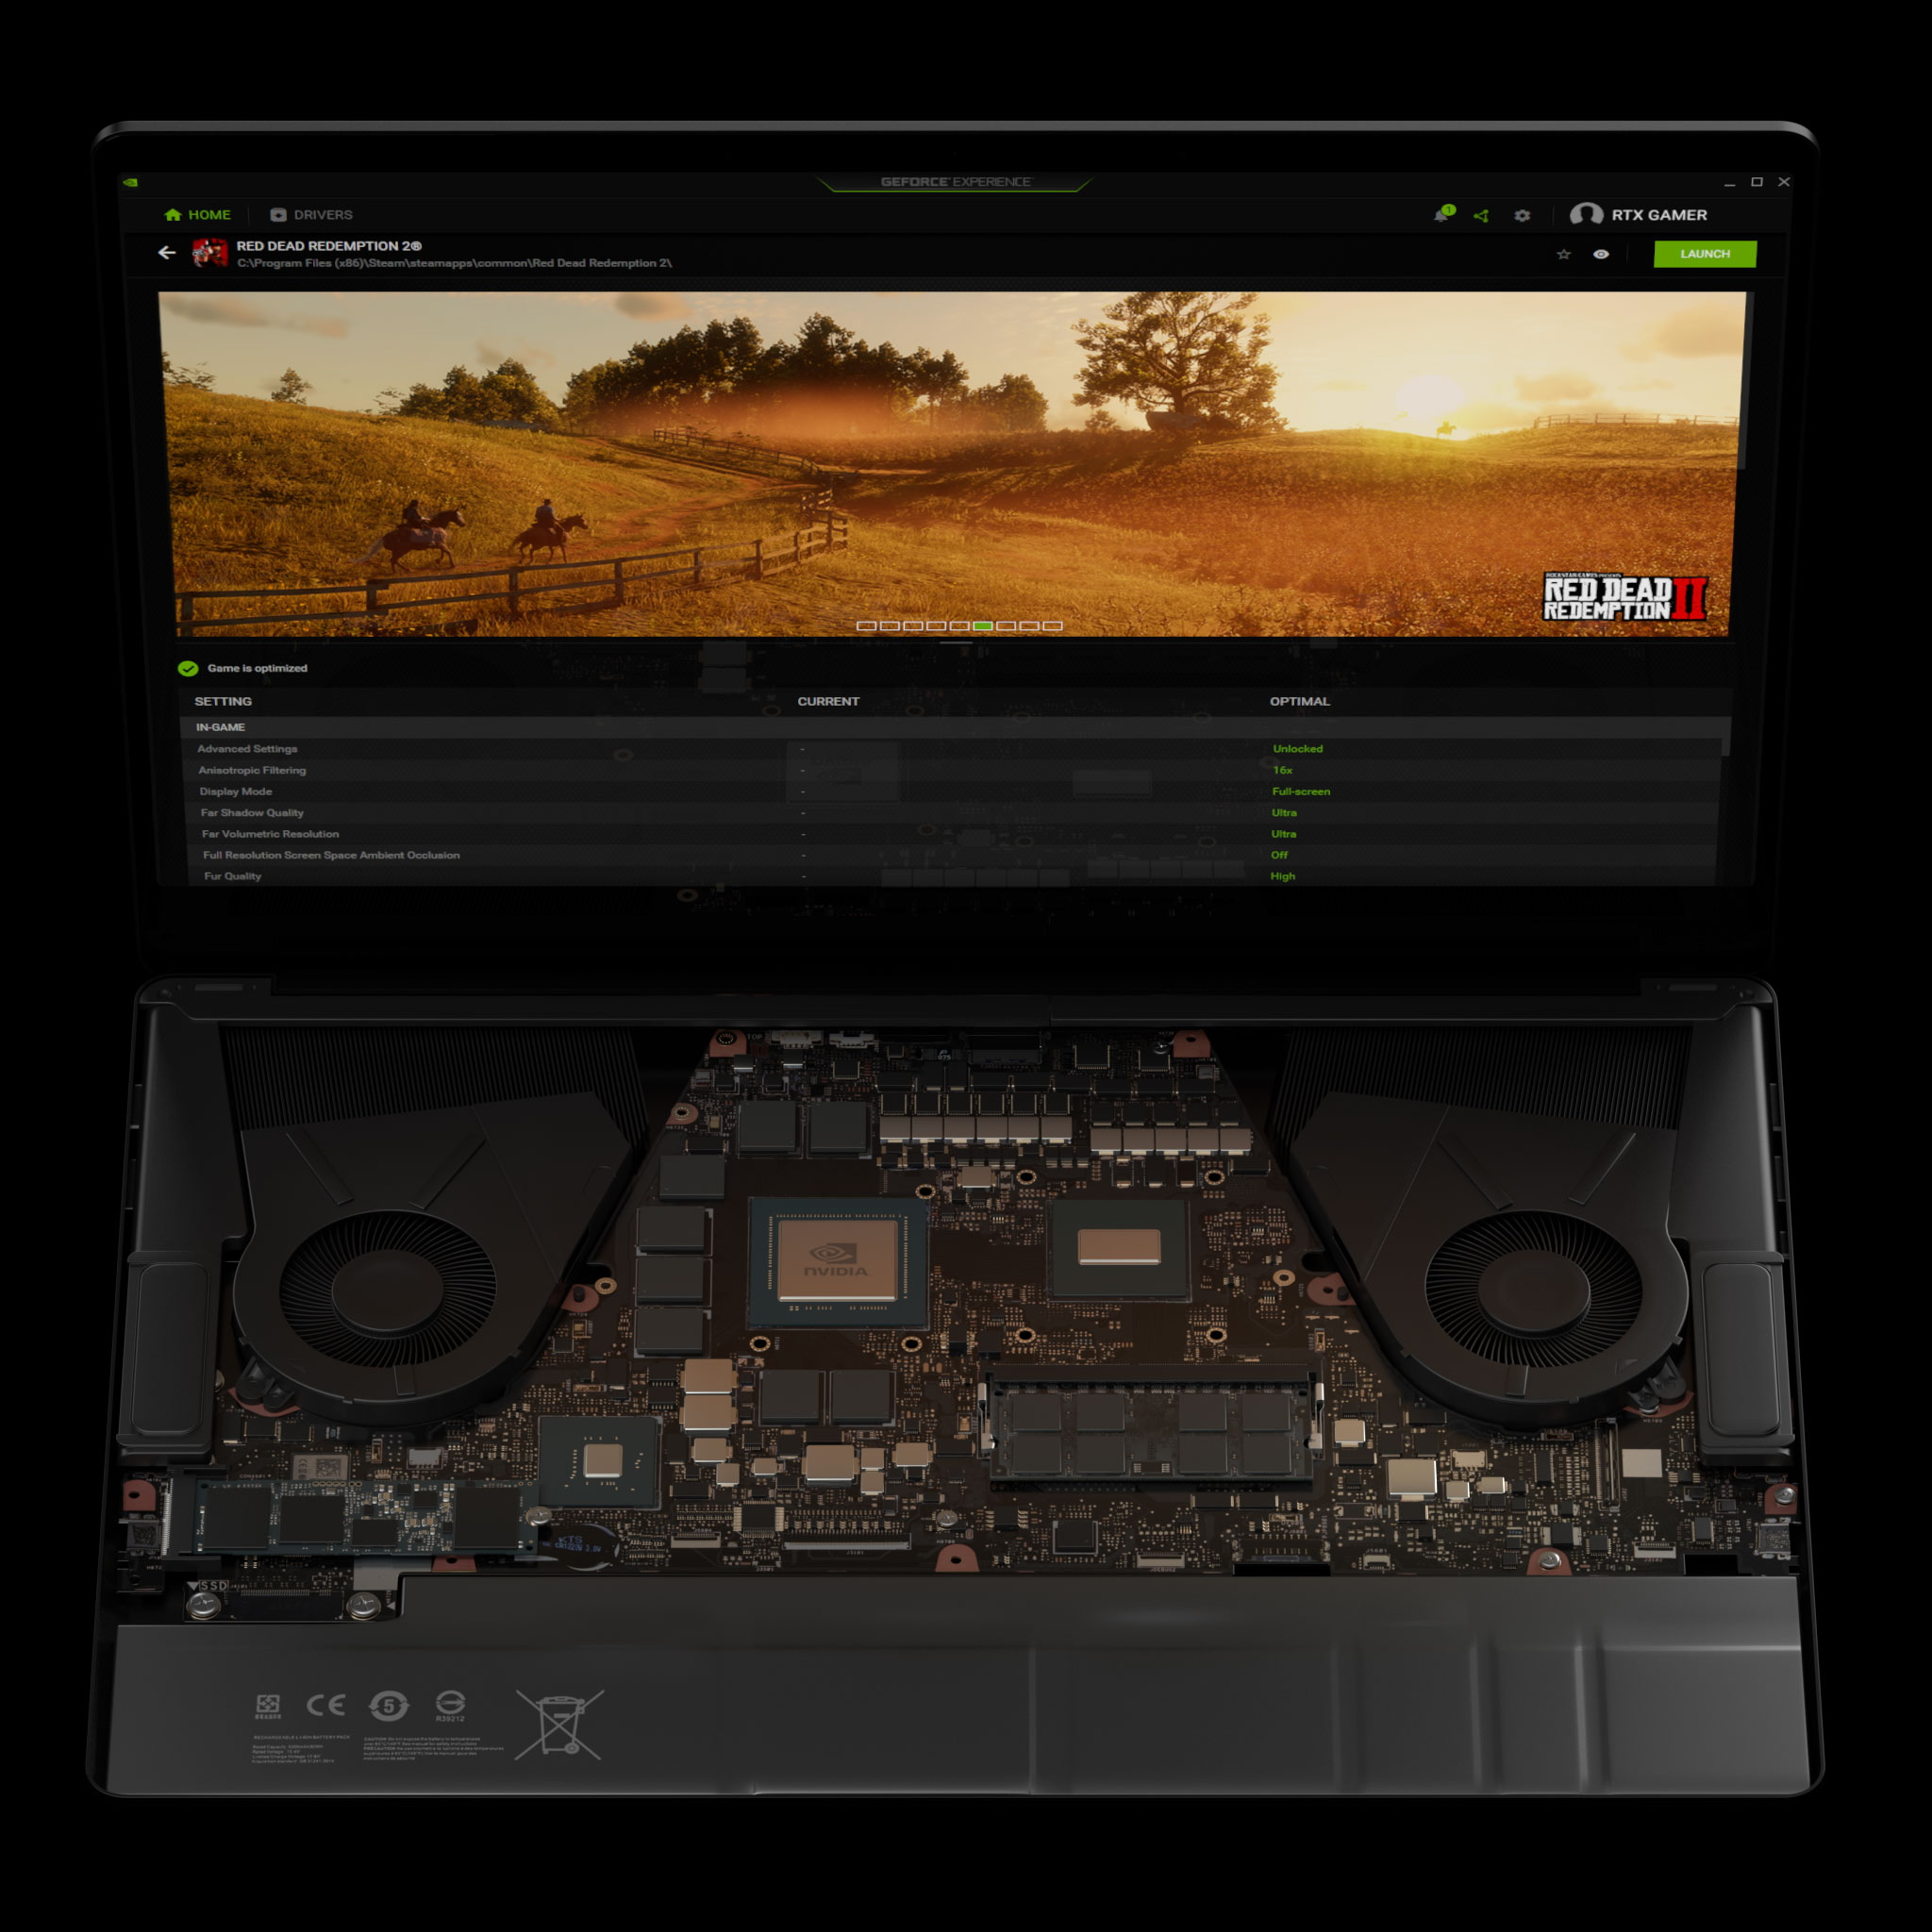 Laptop GeForce dengan pengaturan optimal Max-Q yang dapat dimainkan di GeForce Experience untuk Red Dead Redemption 2